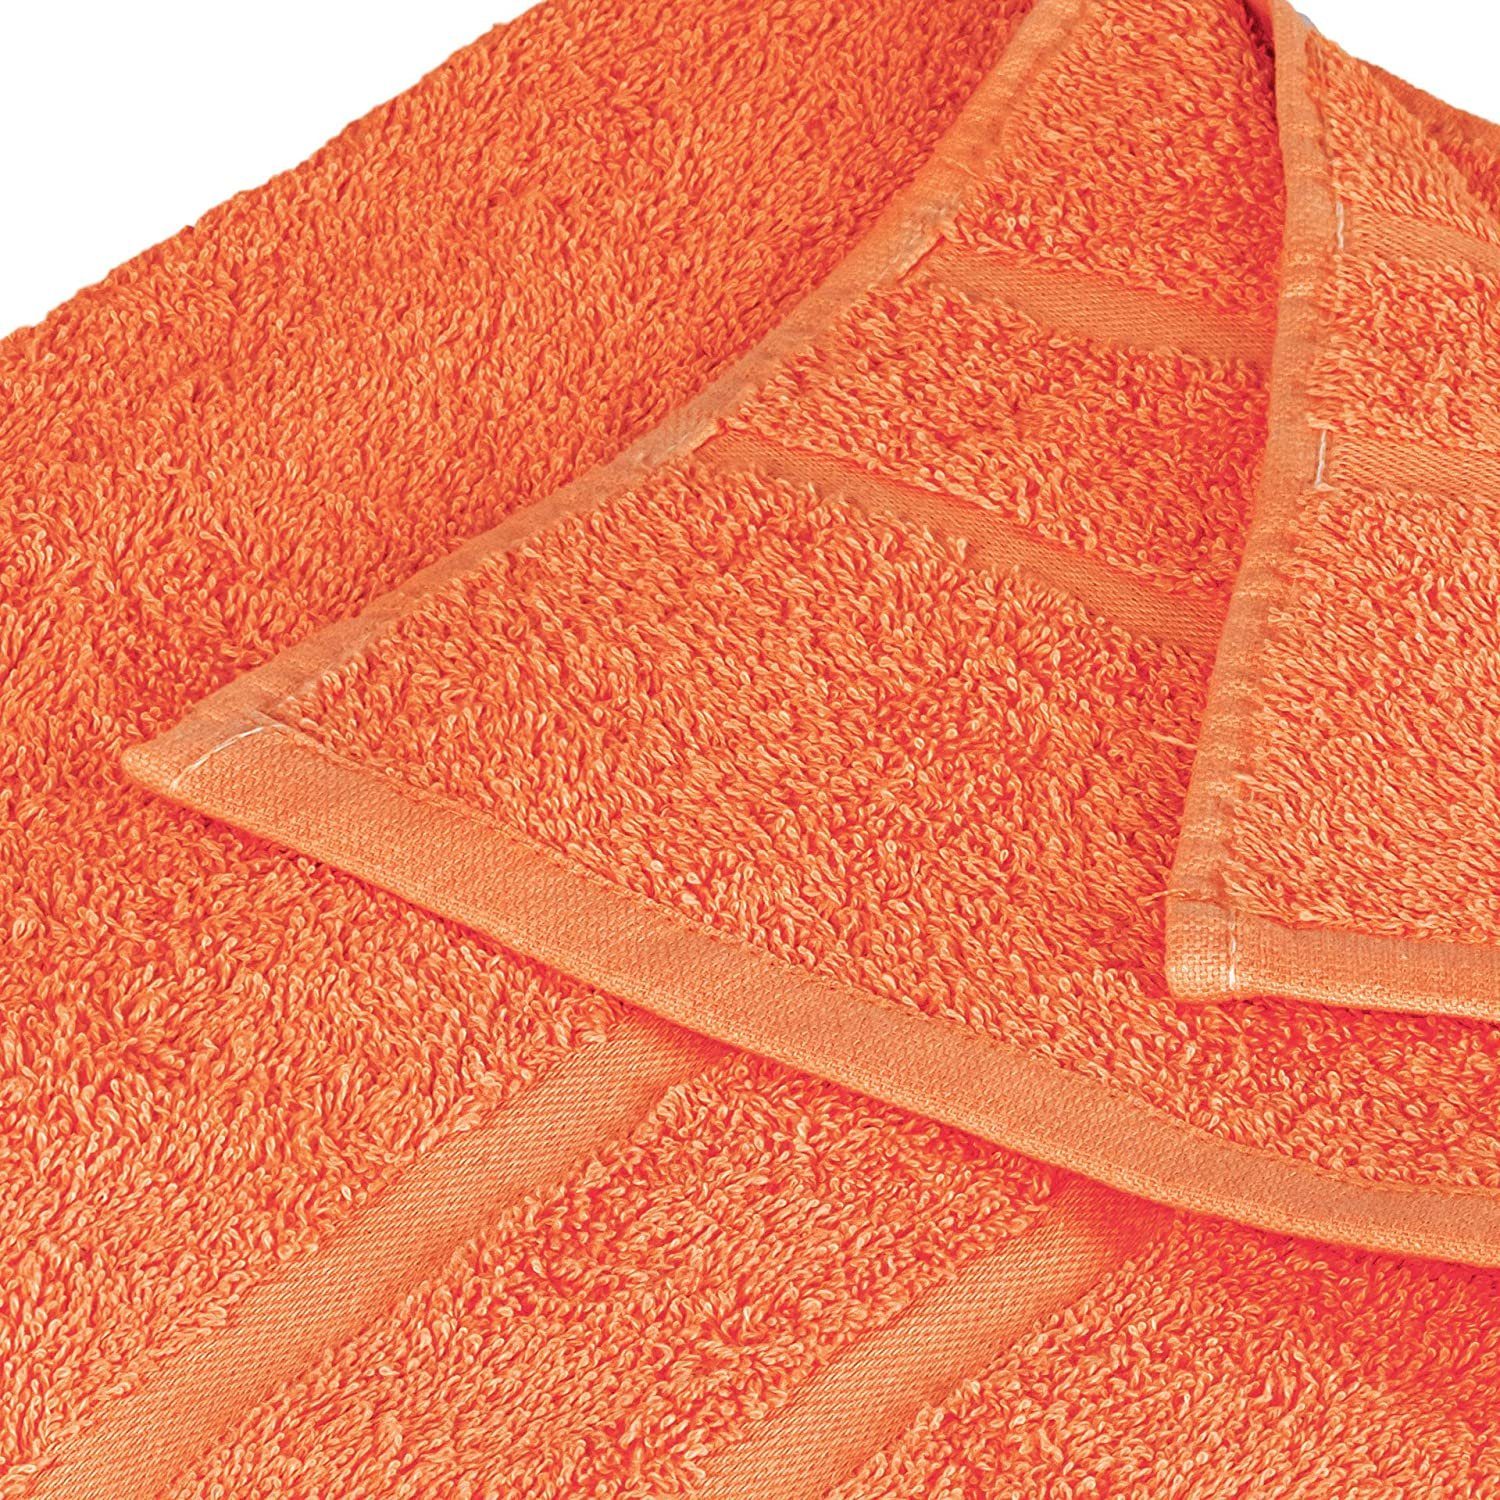 Handtuch zur in 100% StickandShine Wahl Orange GSM 500 Badetücher Duschtücher Saunatücher Gästehandtücher Baumwolle Handtücher